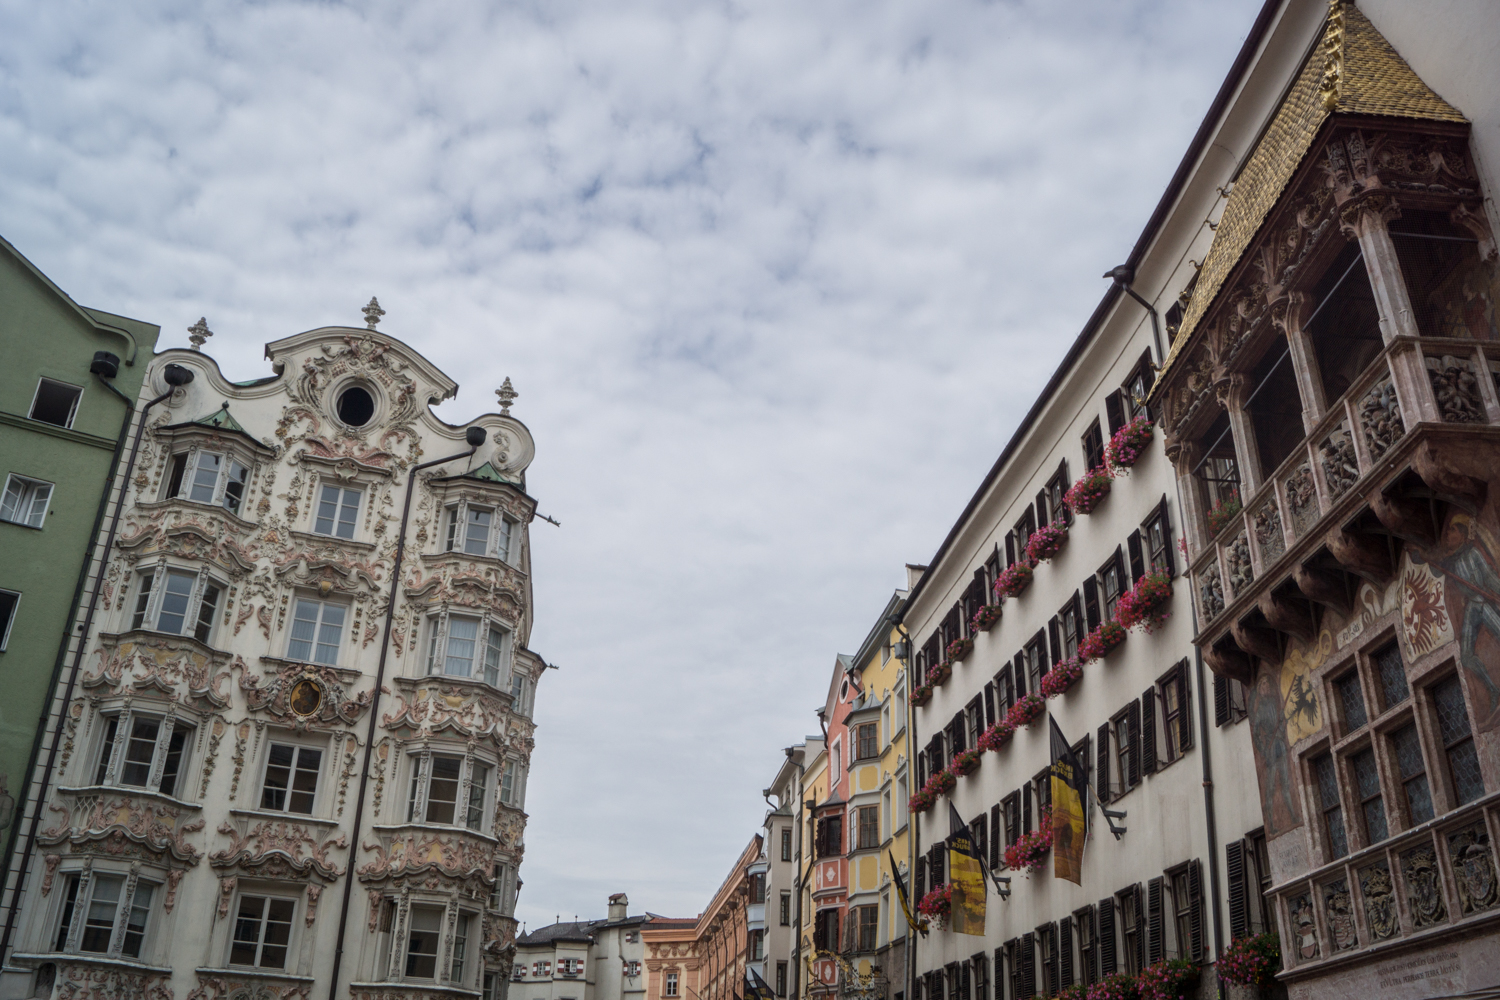 Innsbrucker Altstadt Sehenswürdigkeiten mit goldenem Dachl | Tipps und Empfehlungen für einen Aufenthalt in Innsbruck